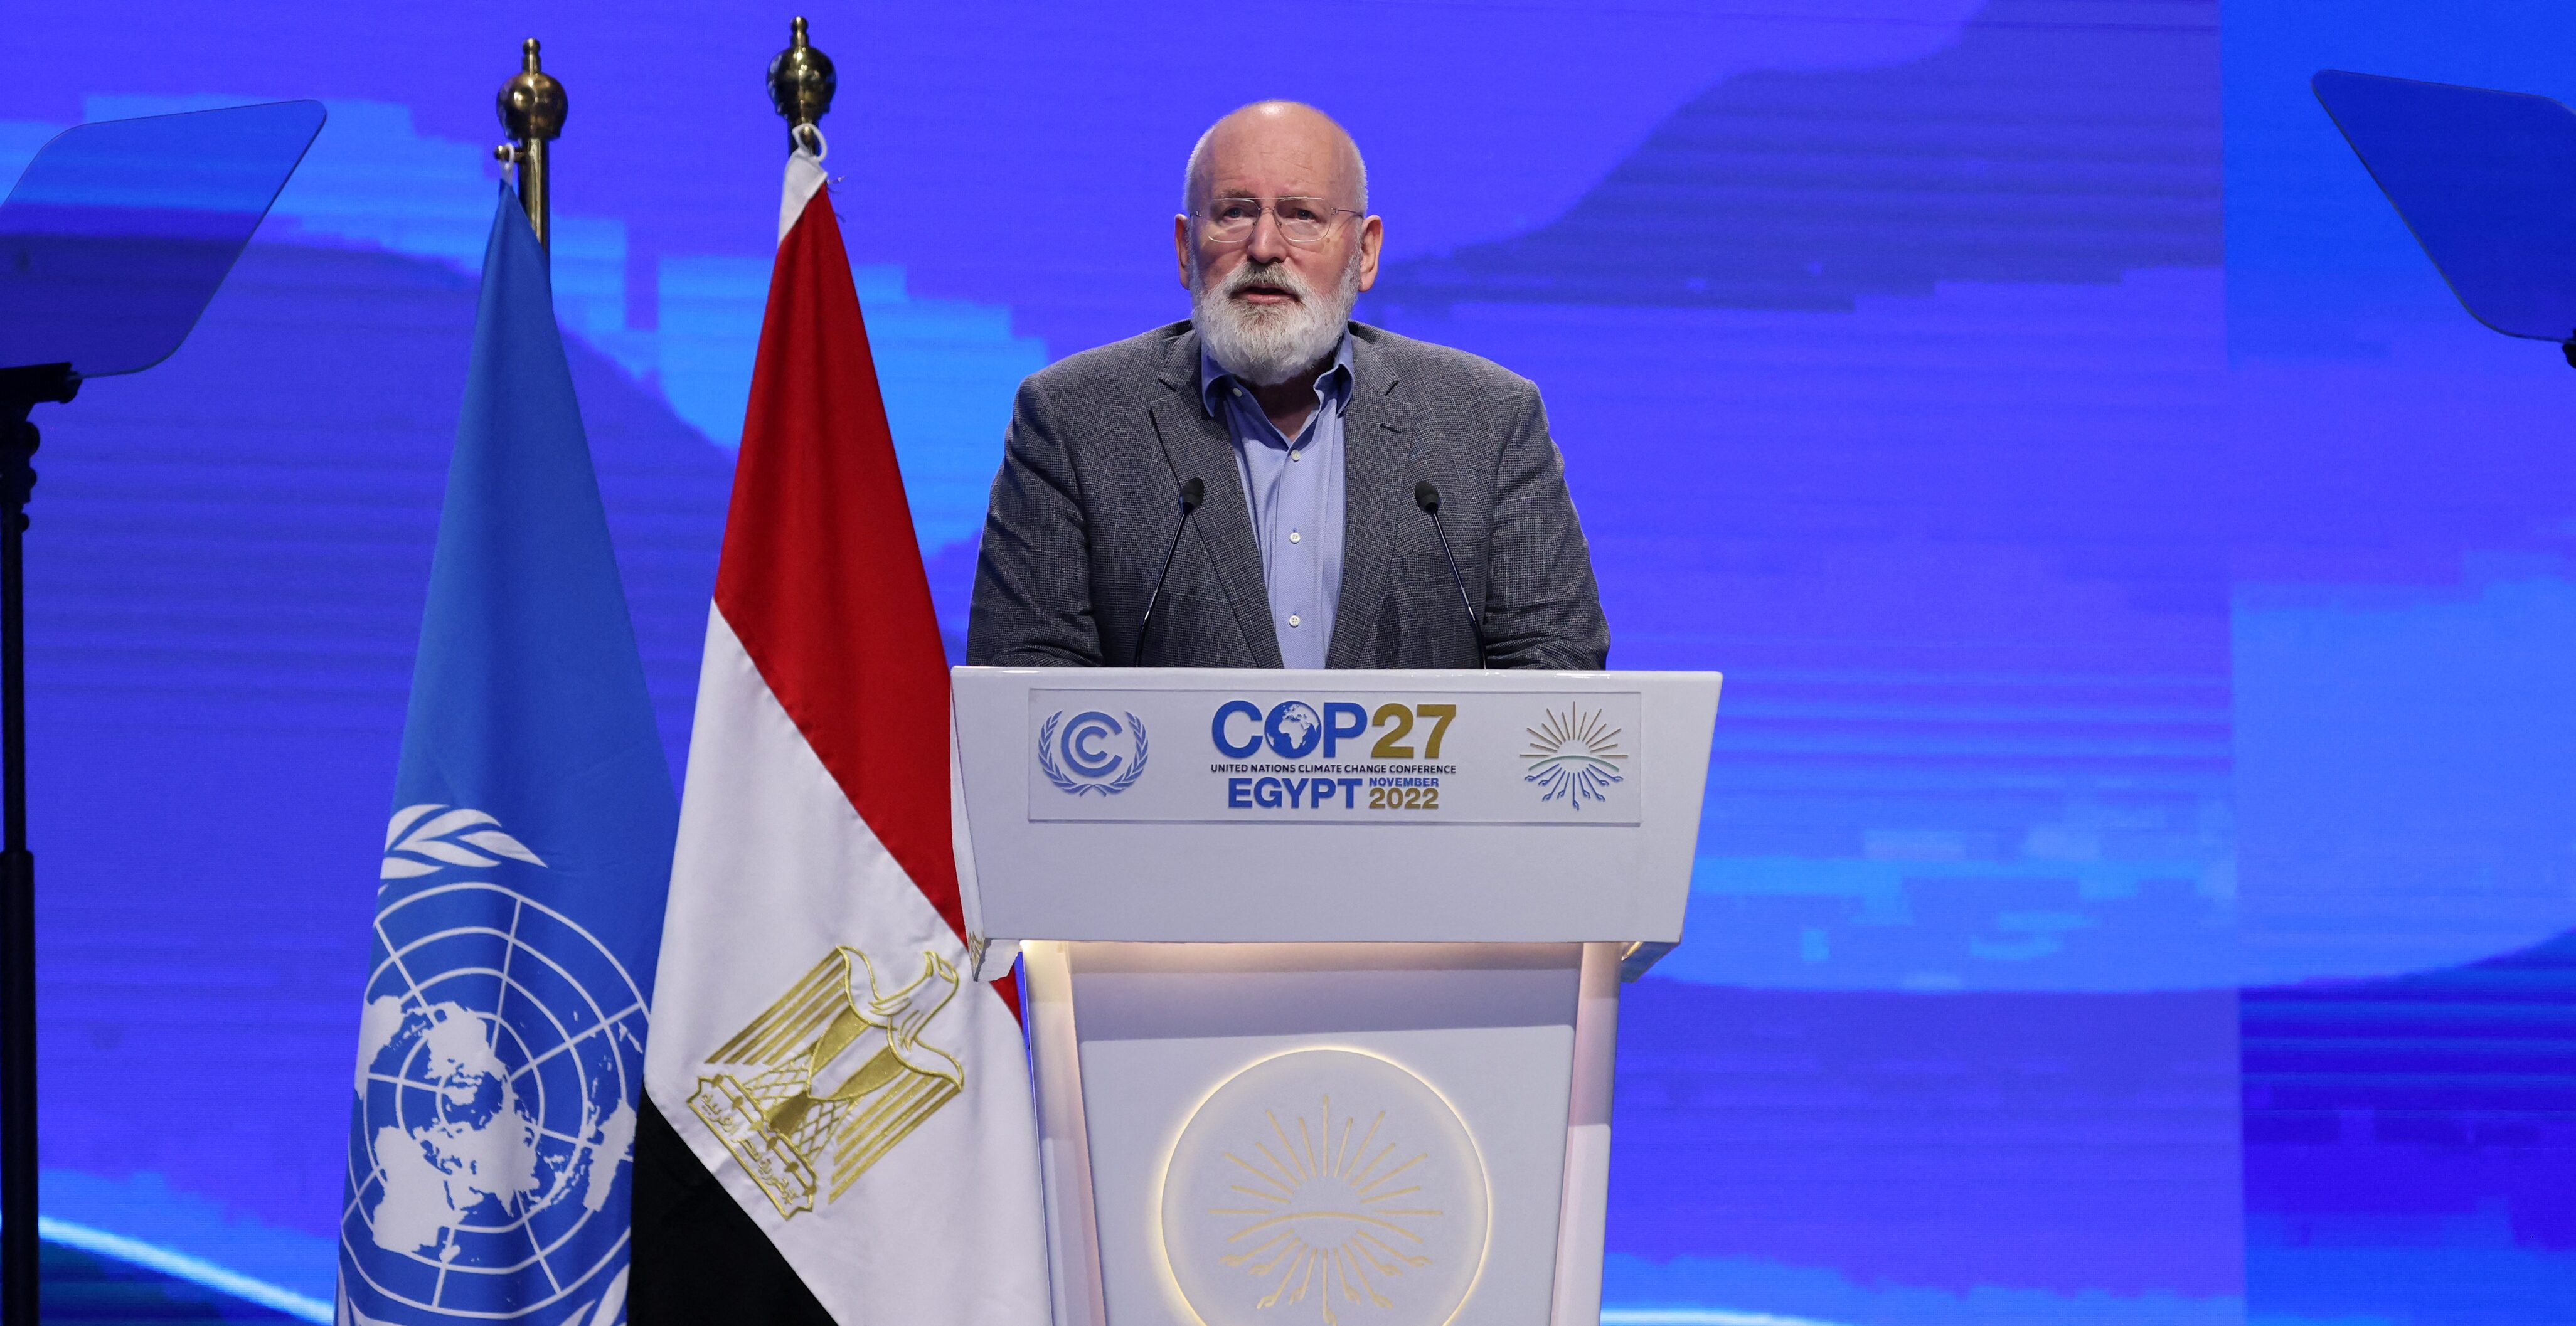 klimaattop, COP27, Frans Timmermans